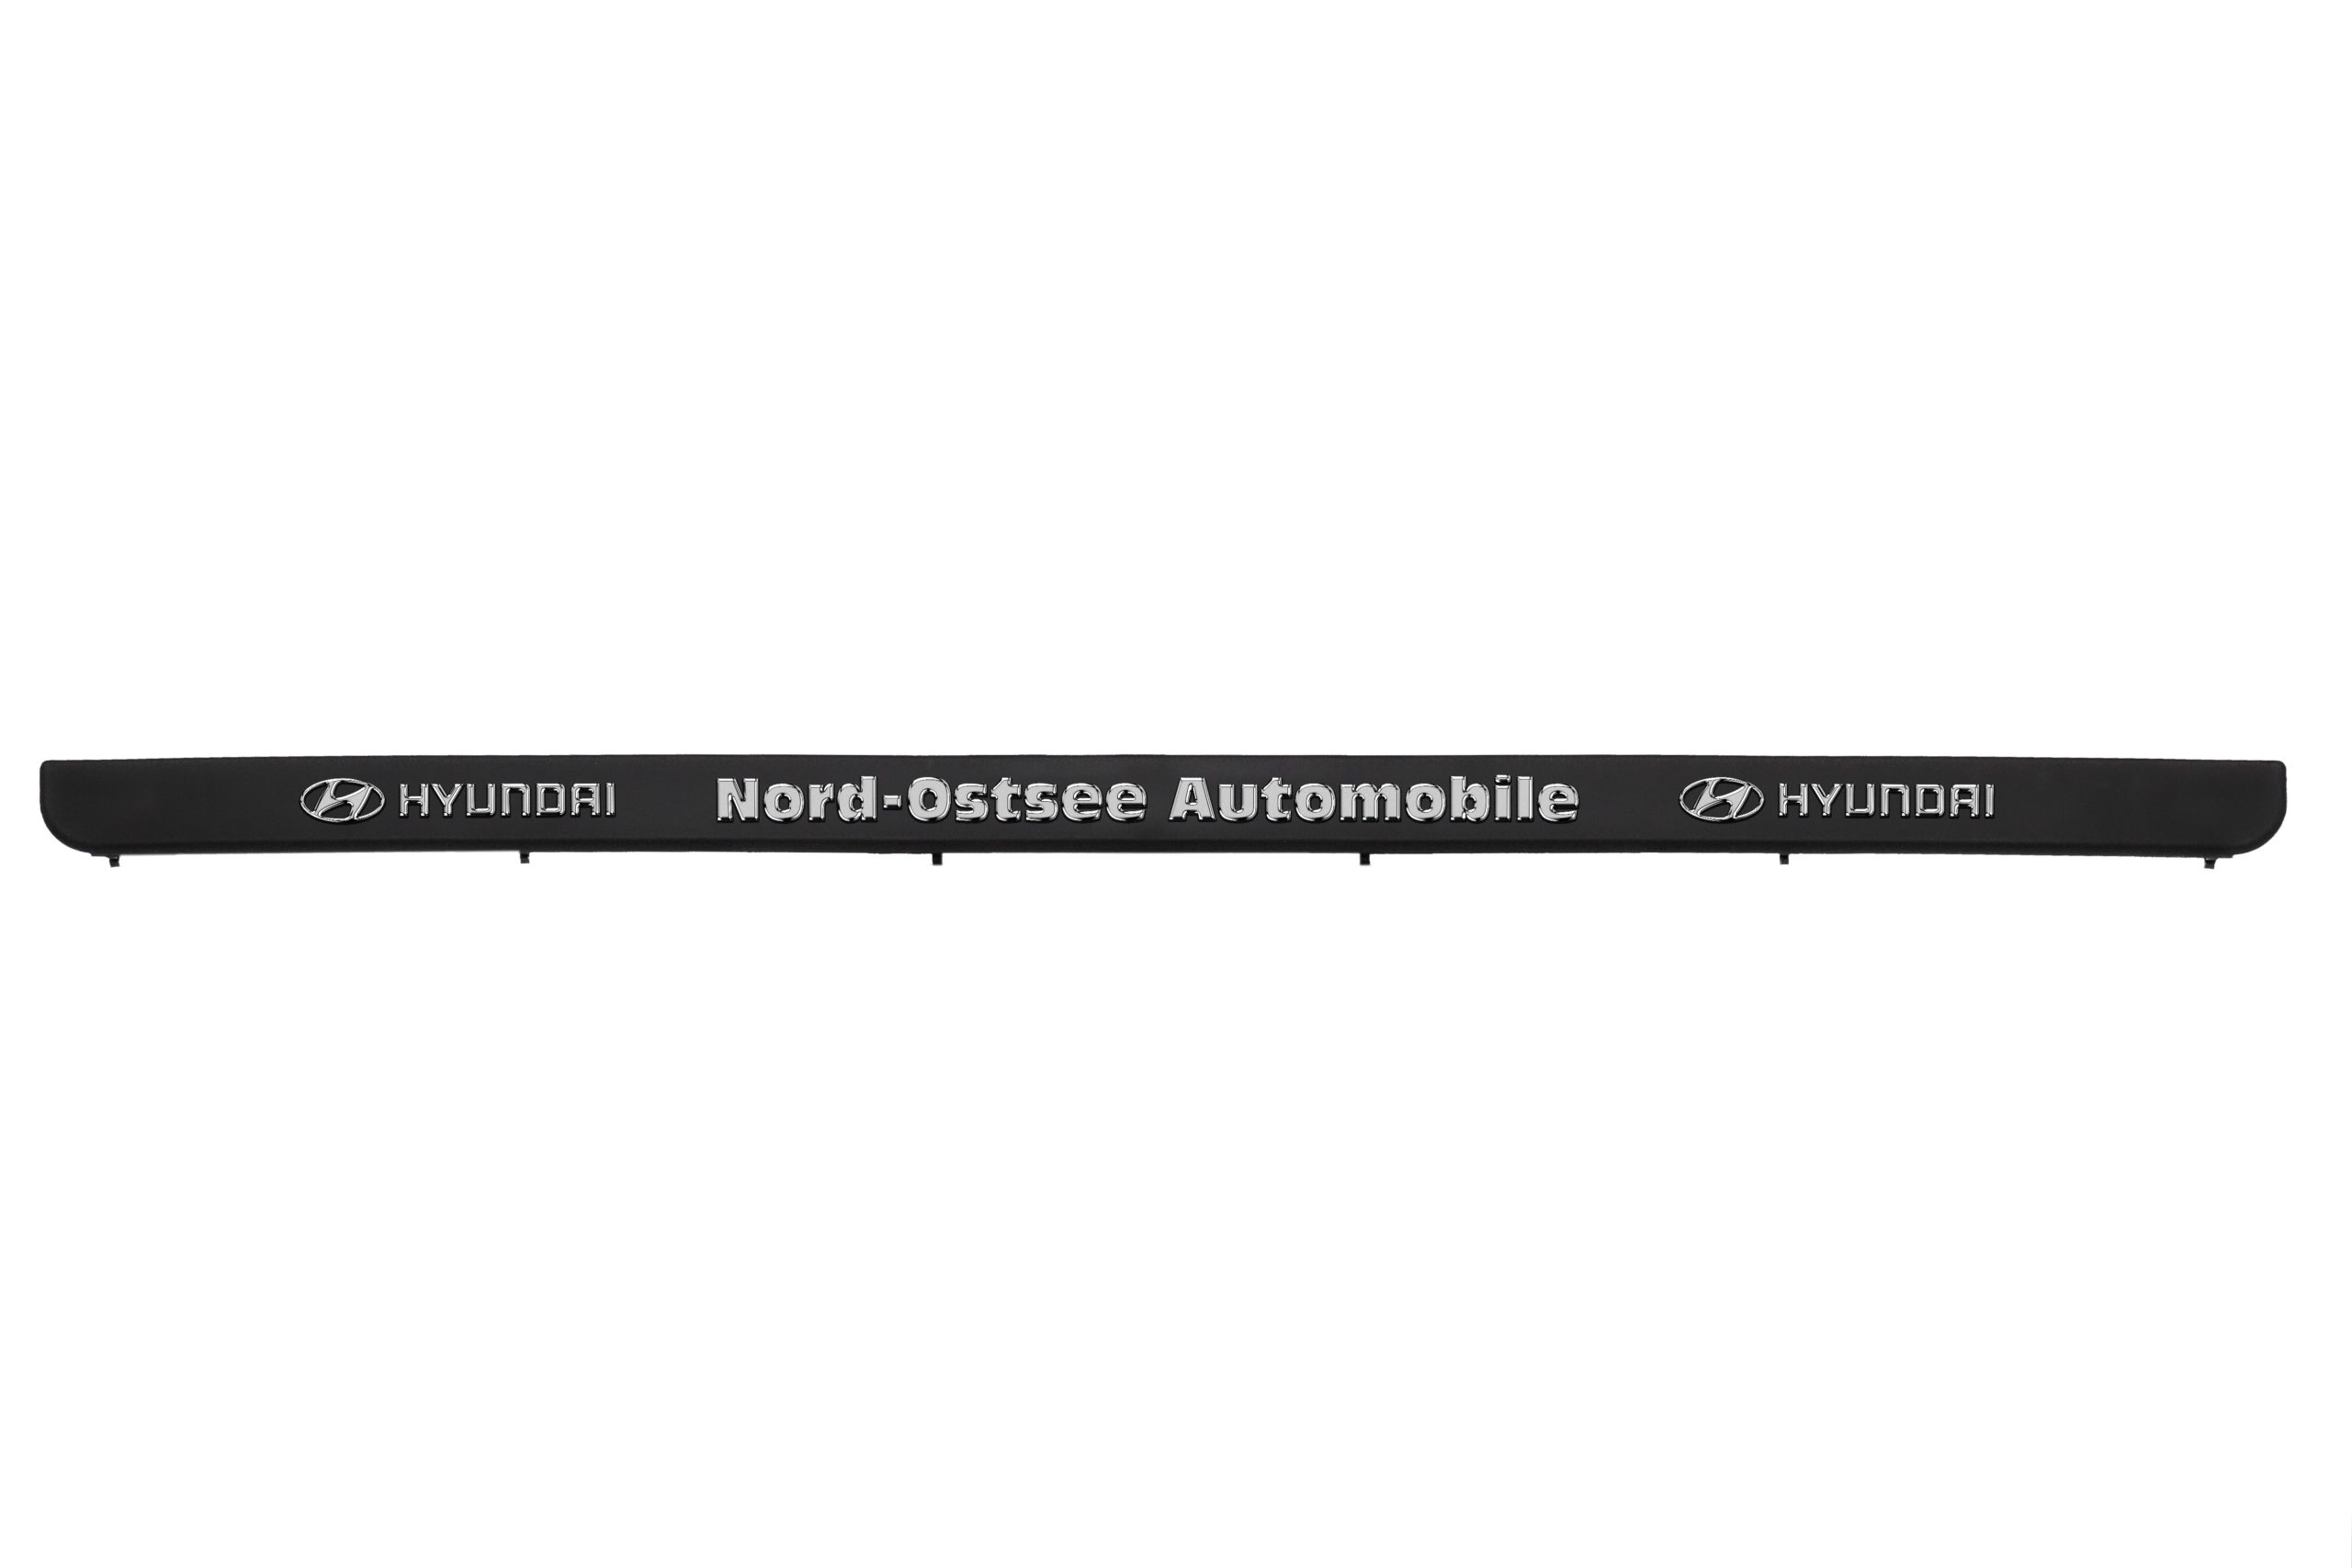 Leiste NEPTUN 520s Exklusiv mit erhabener Schrift – Burhan CTR GmbH & Co. KG  Onlineshop